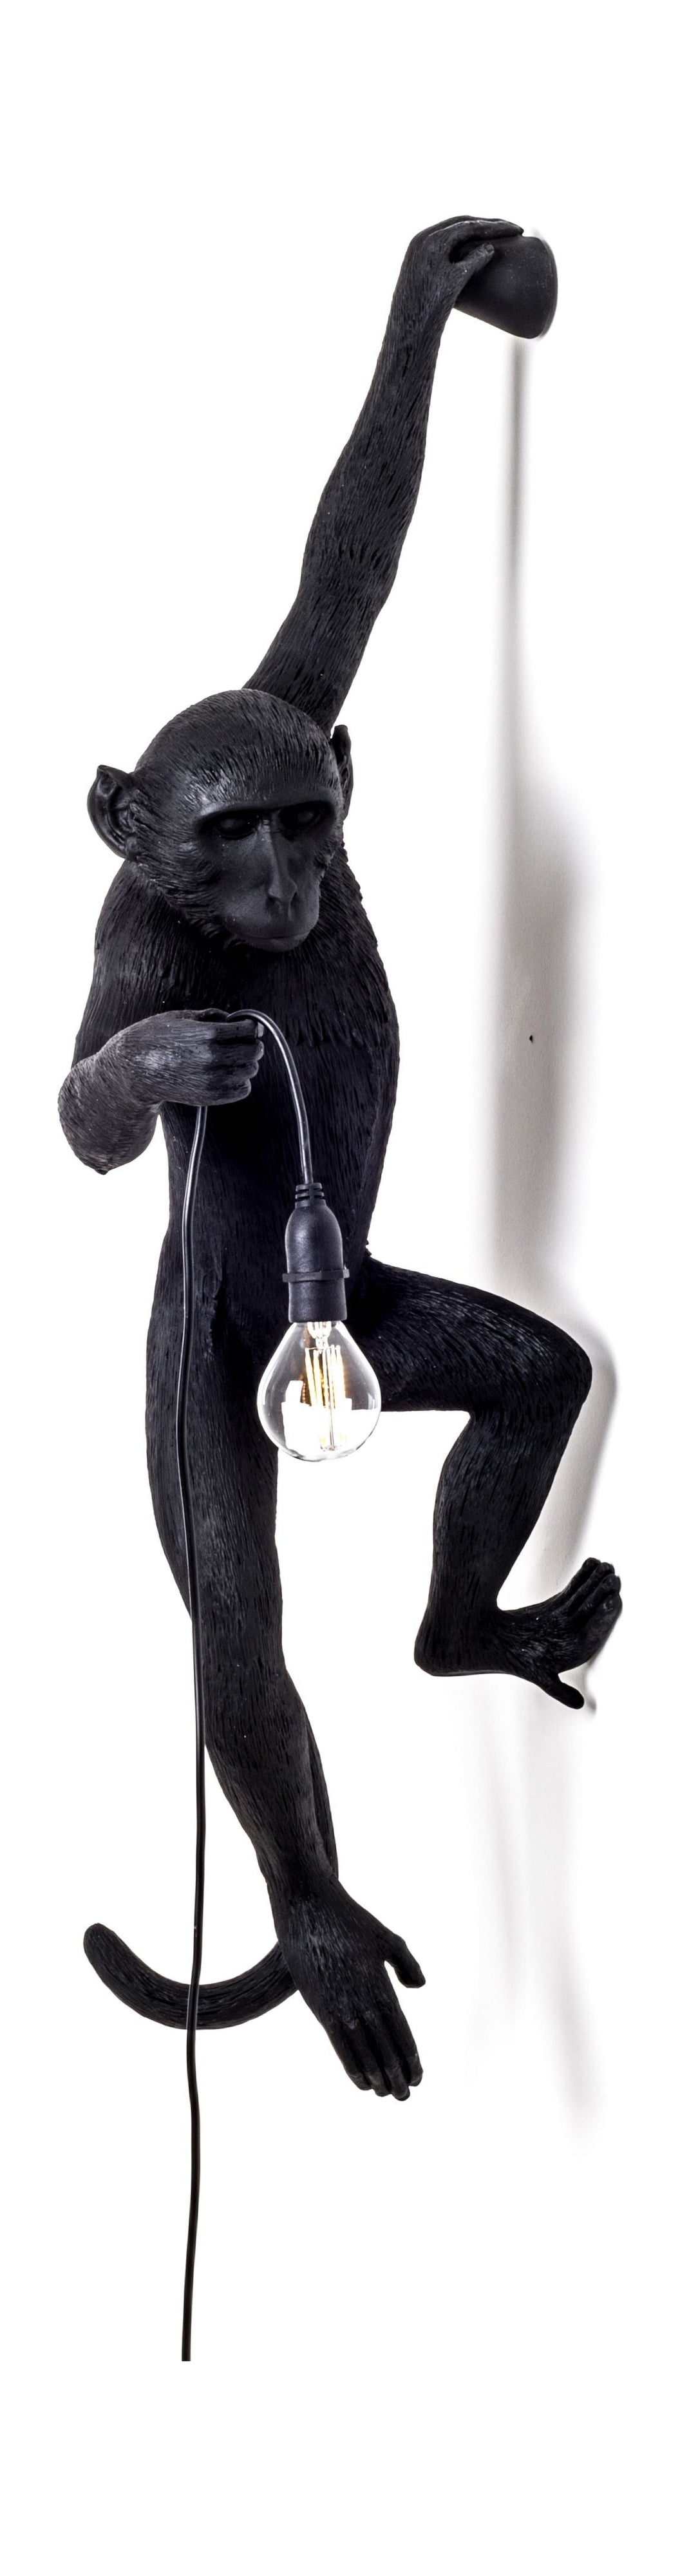 Seletti Monkey Outdoor Lamp černá, visí levá ruka